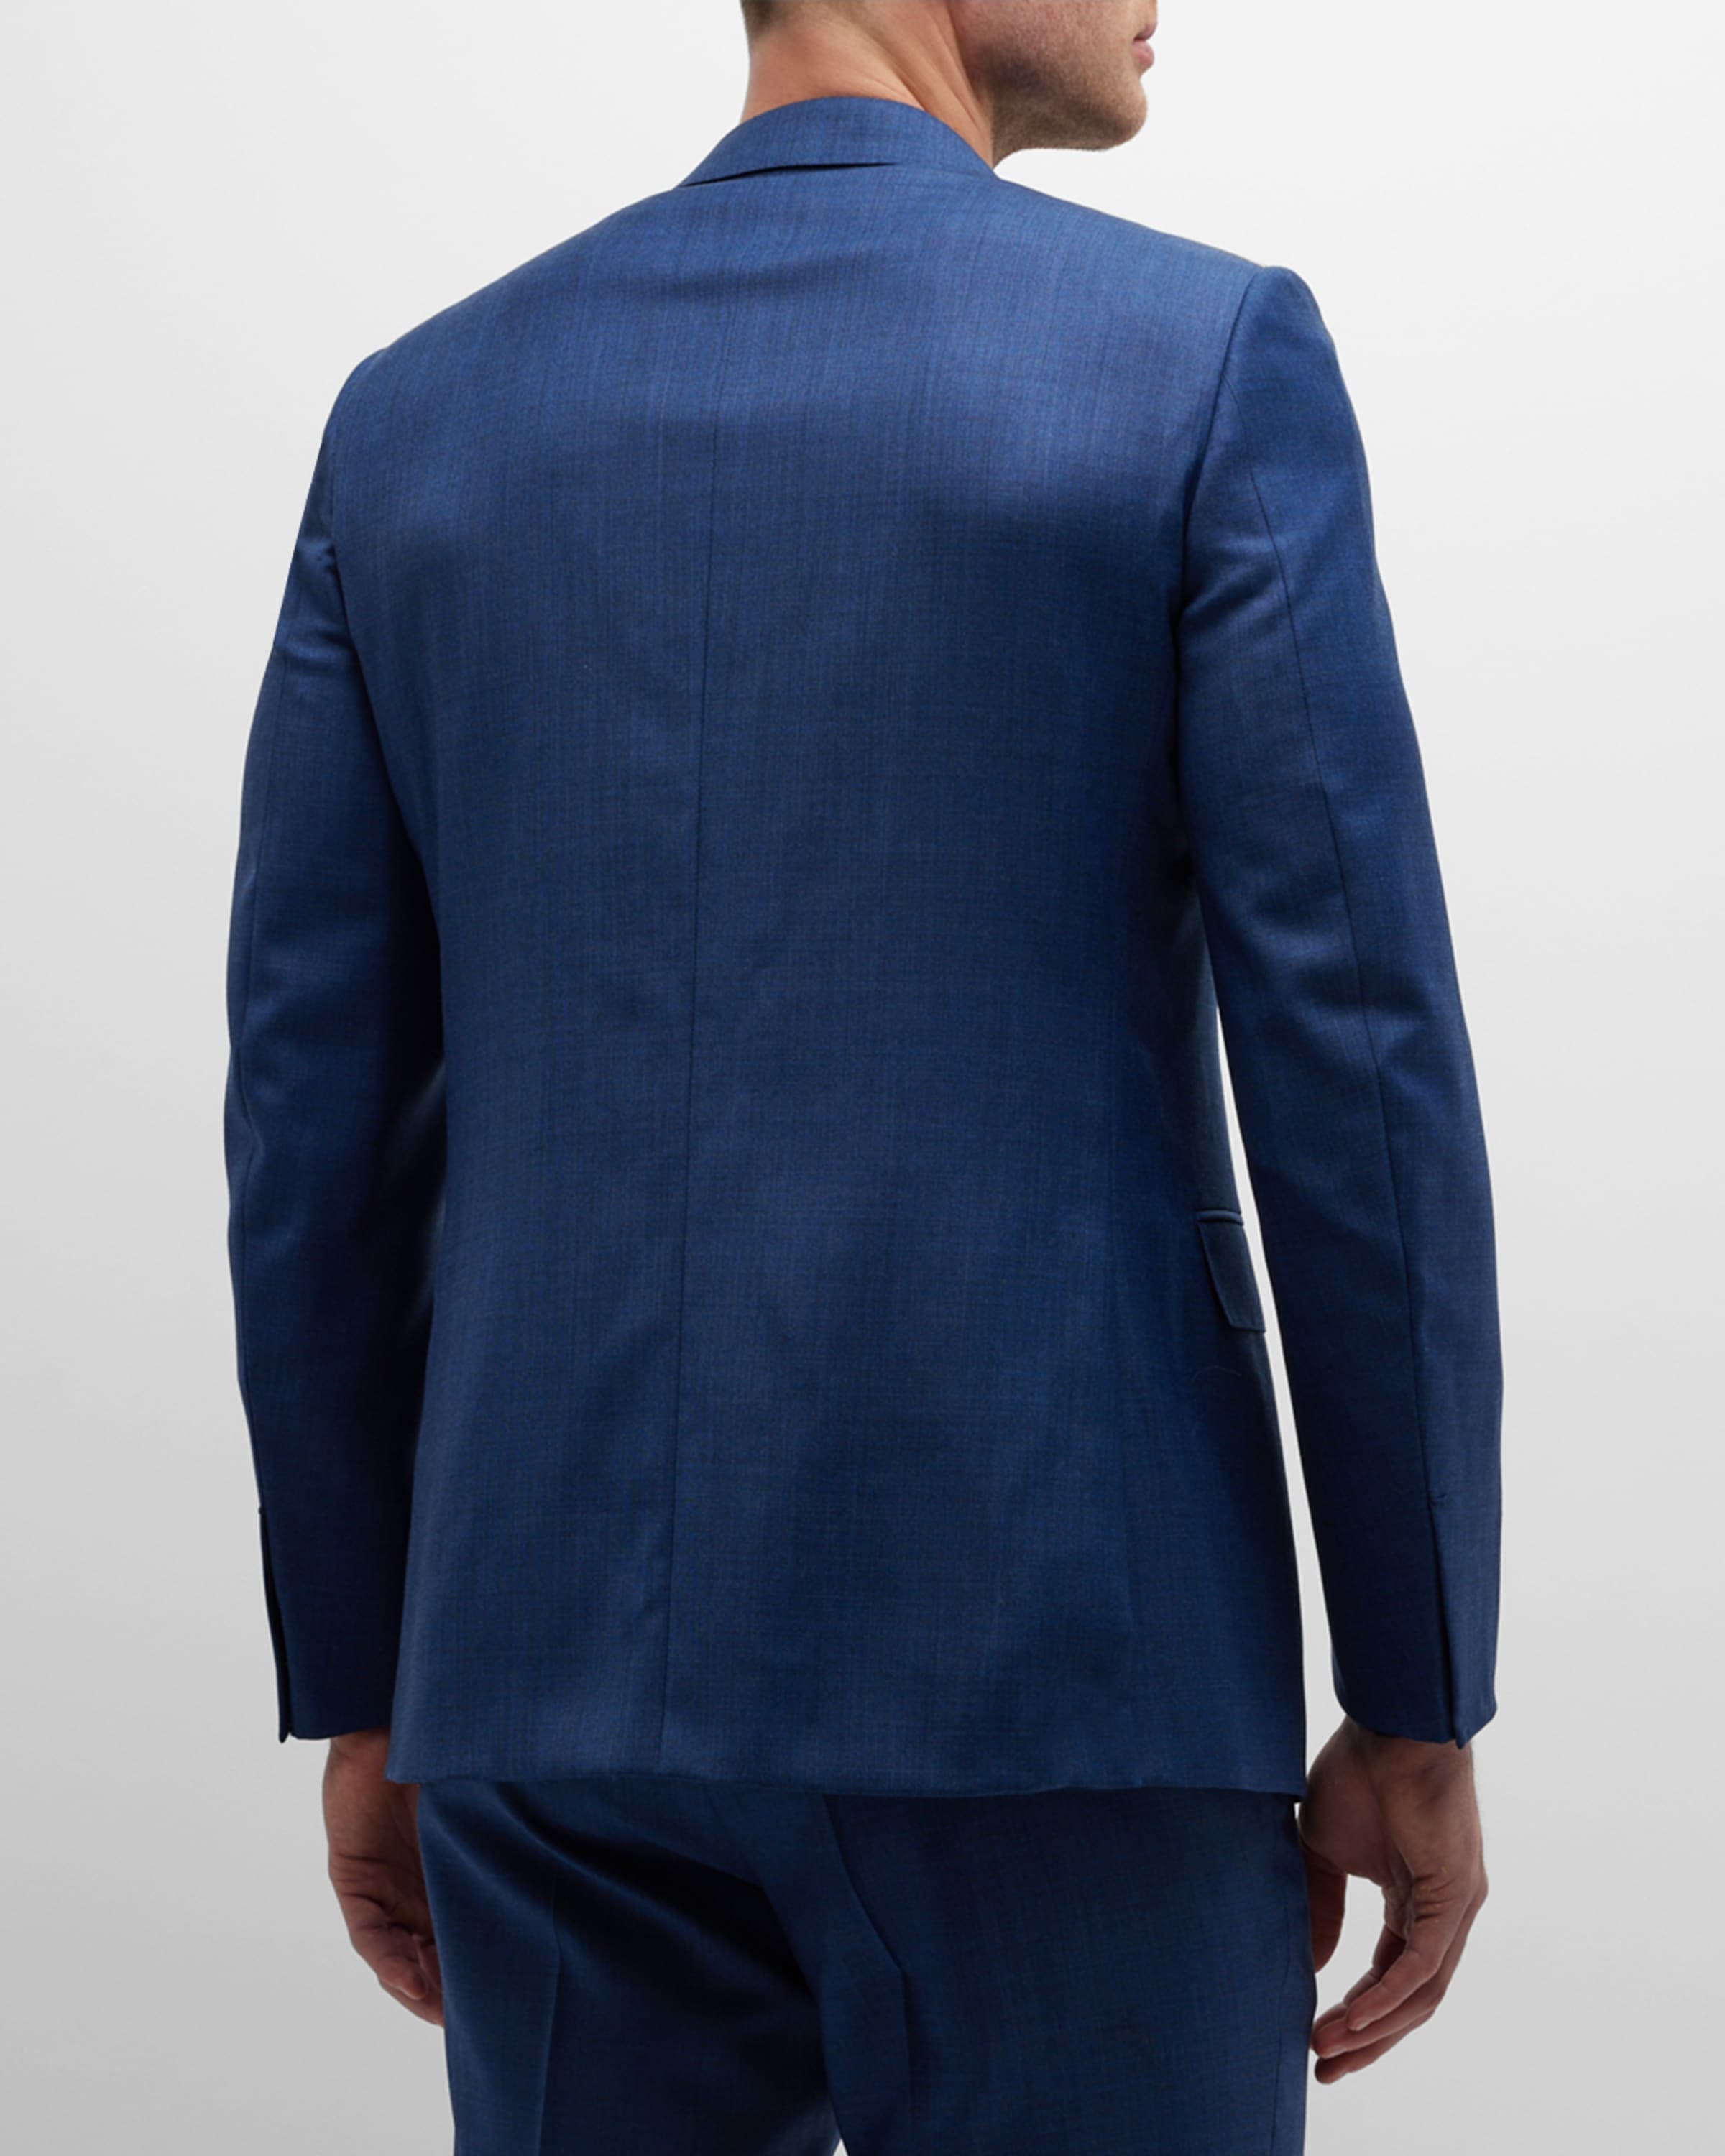 Men's Solid Wool Classic-Fit Suit - 6